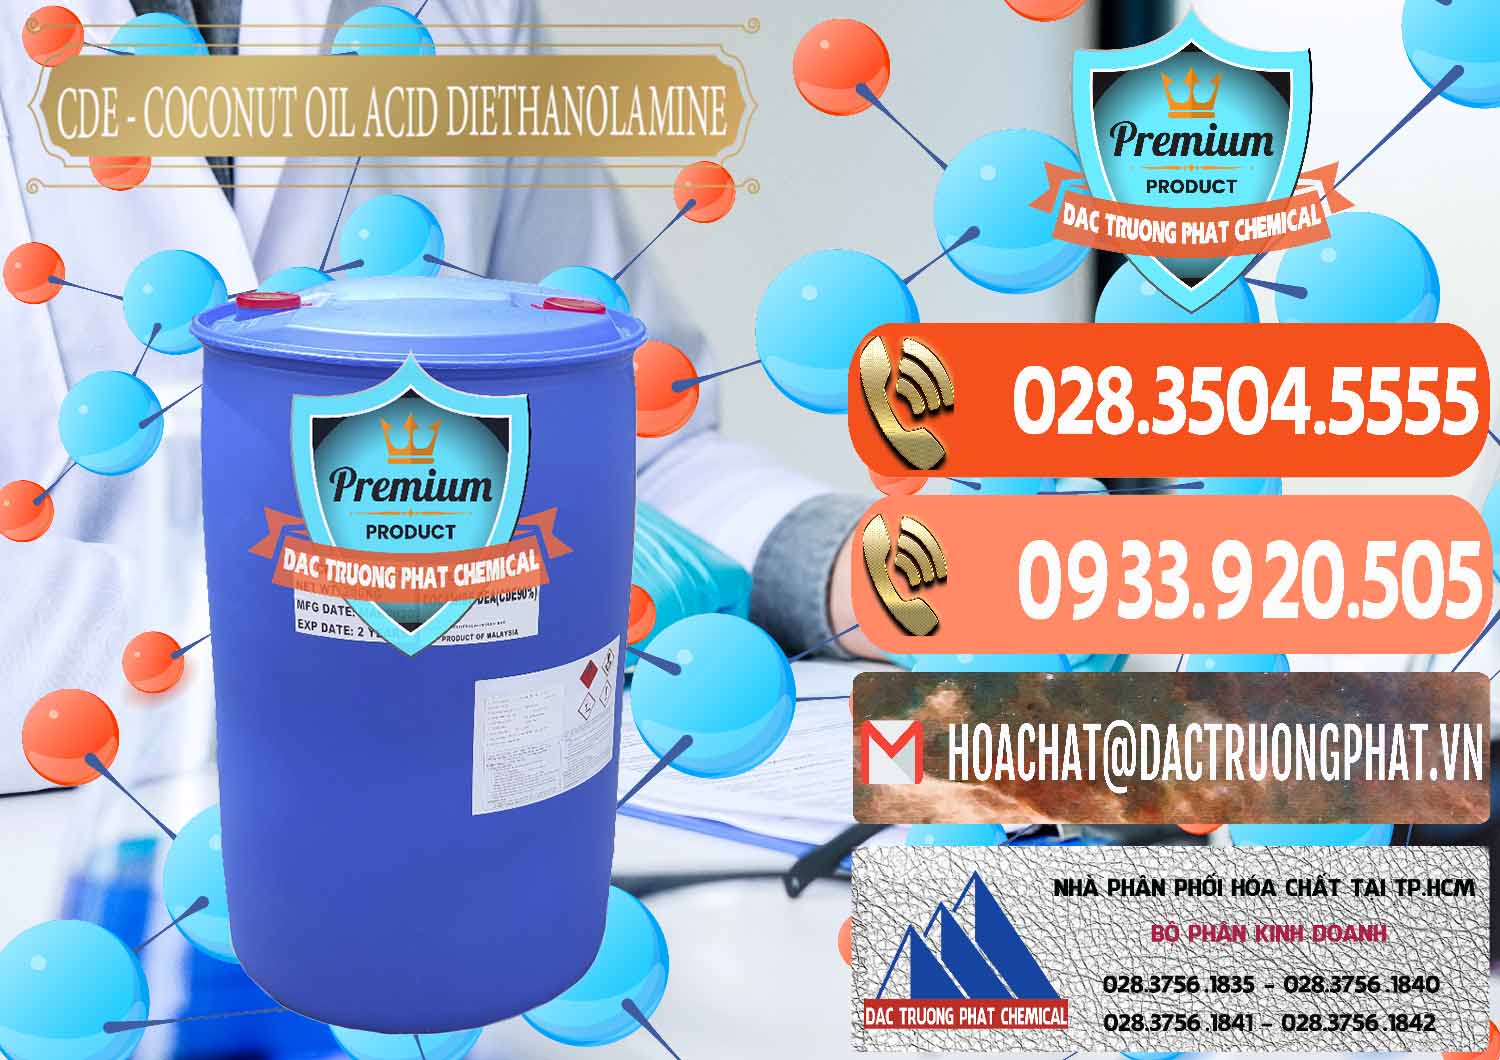 Nơi bán - cung ứng CDE - Coconut Oil Acid Diethanolamine Mã Lai Malaysia - 0311 - Cty nhập khẩu - phân phối hóa chất tại TP.HCM - hoachatmientay.com